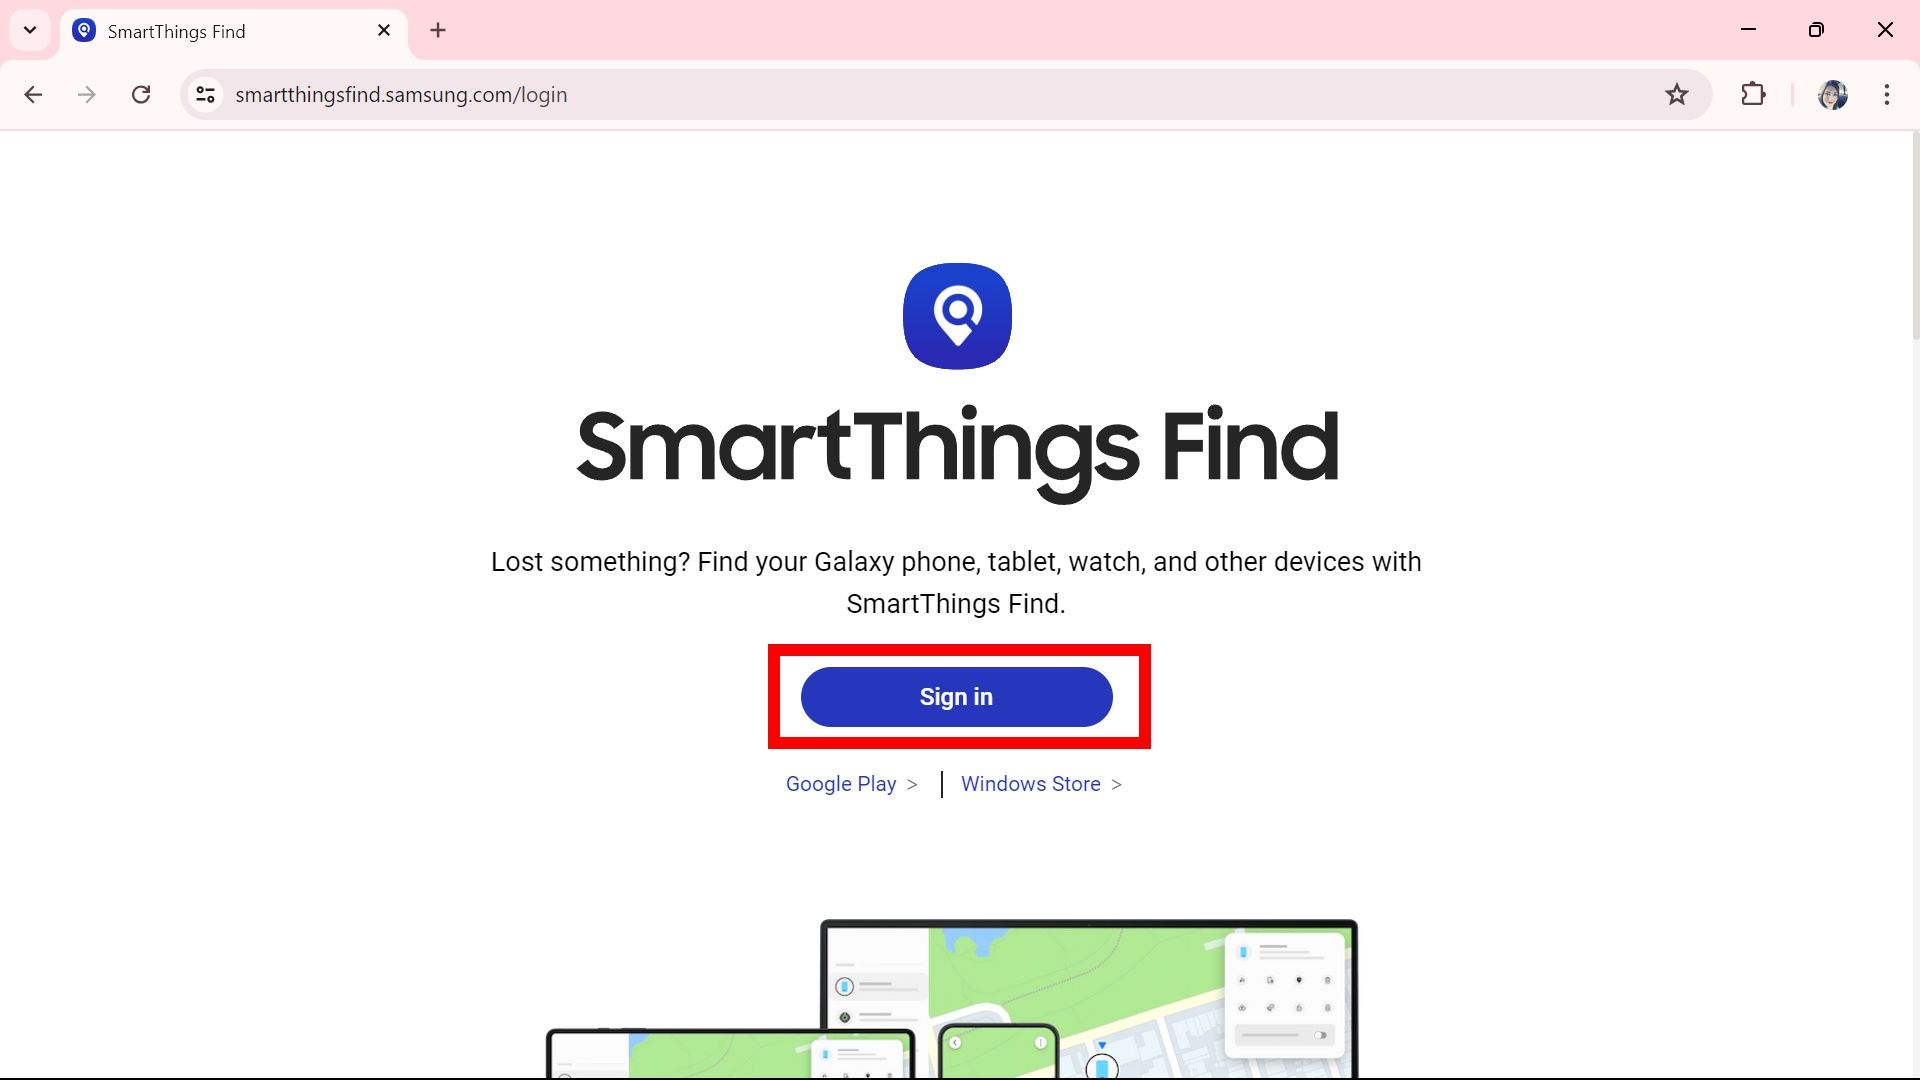 Contorno de retângulo vermelho destacando o botão Entrar na página inicial do Samsung SmartThings